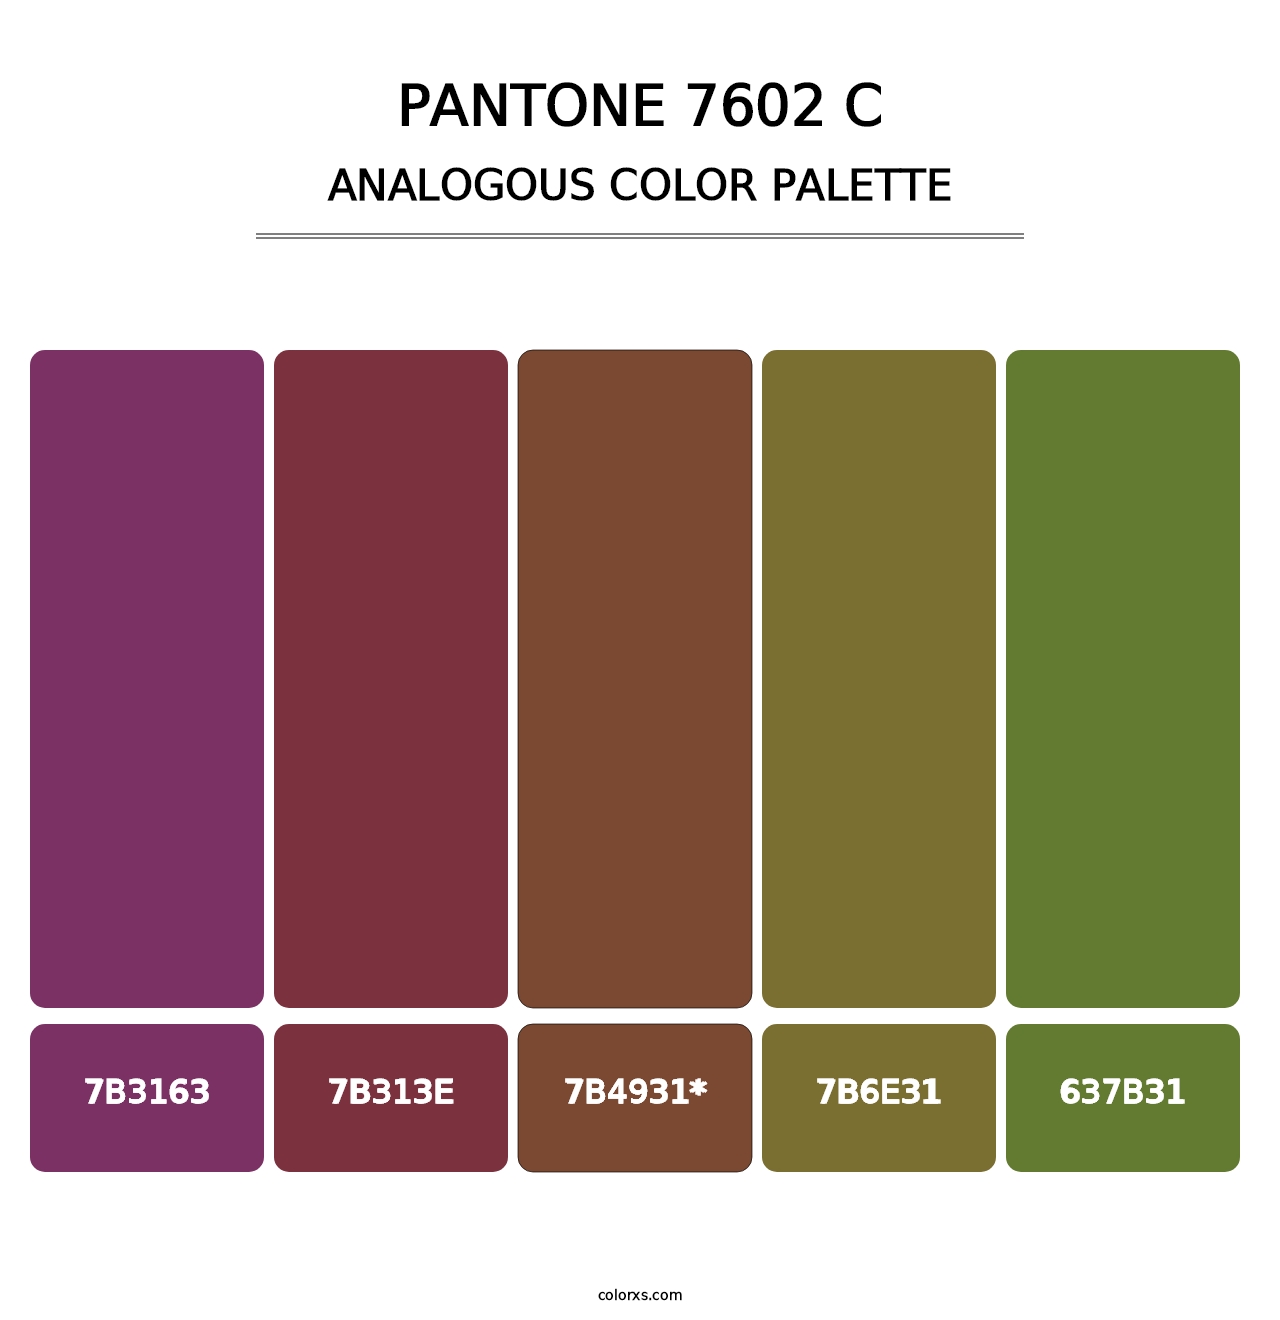 PANTONE 7602 C - Analogous Color Palette